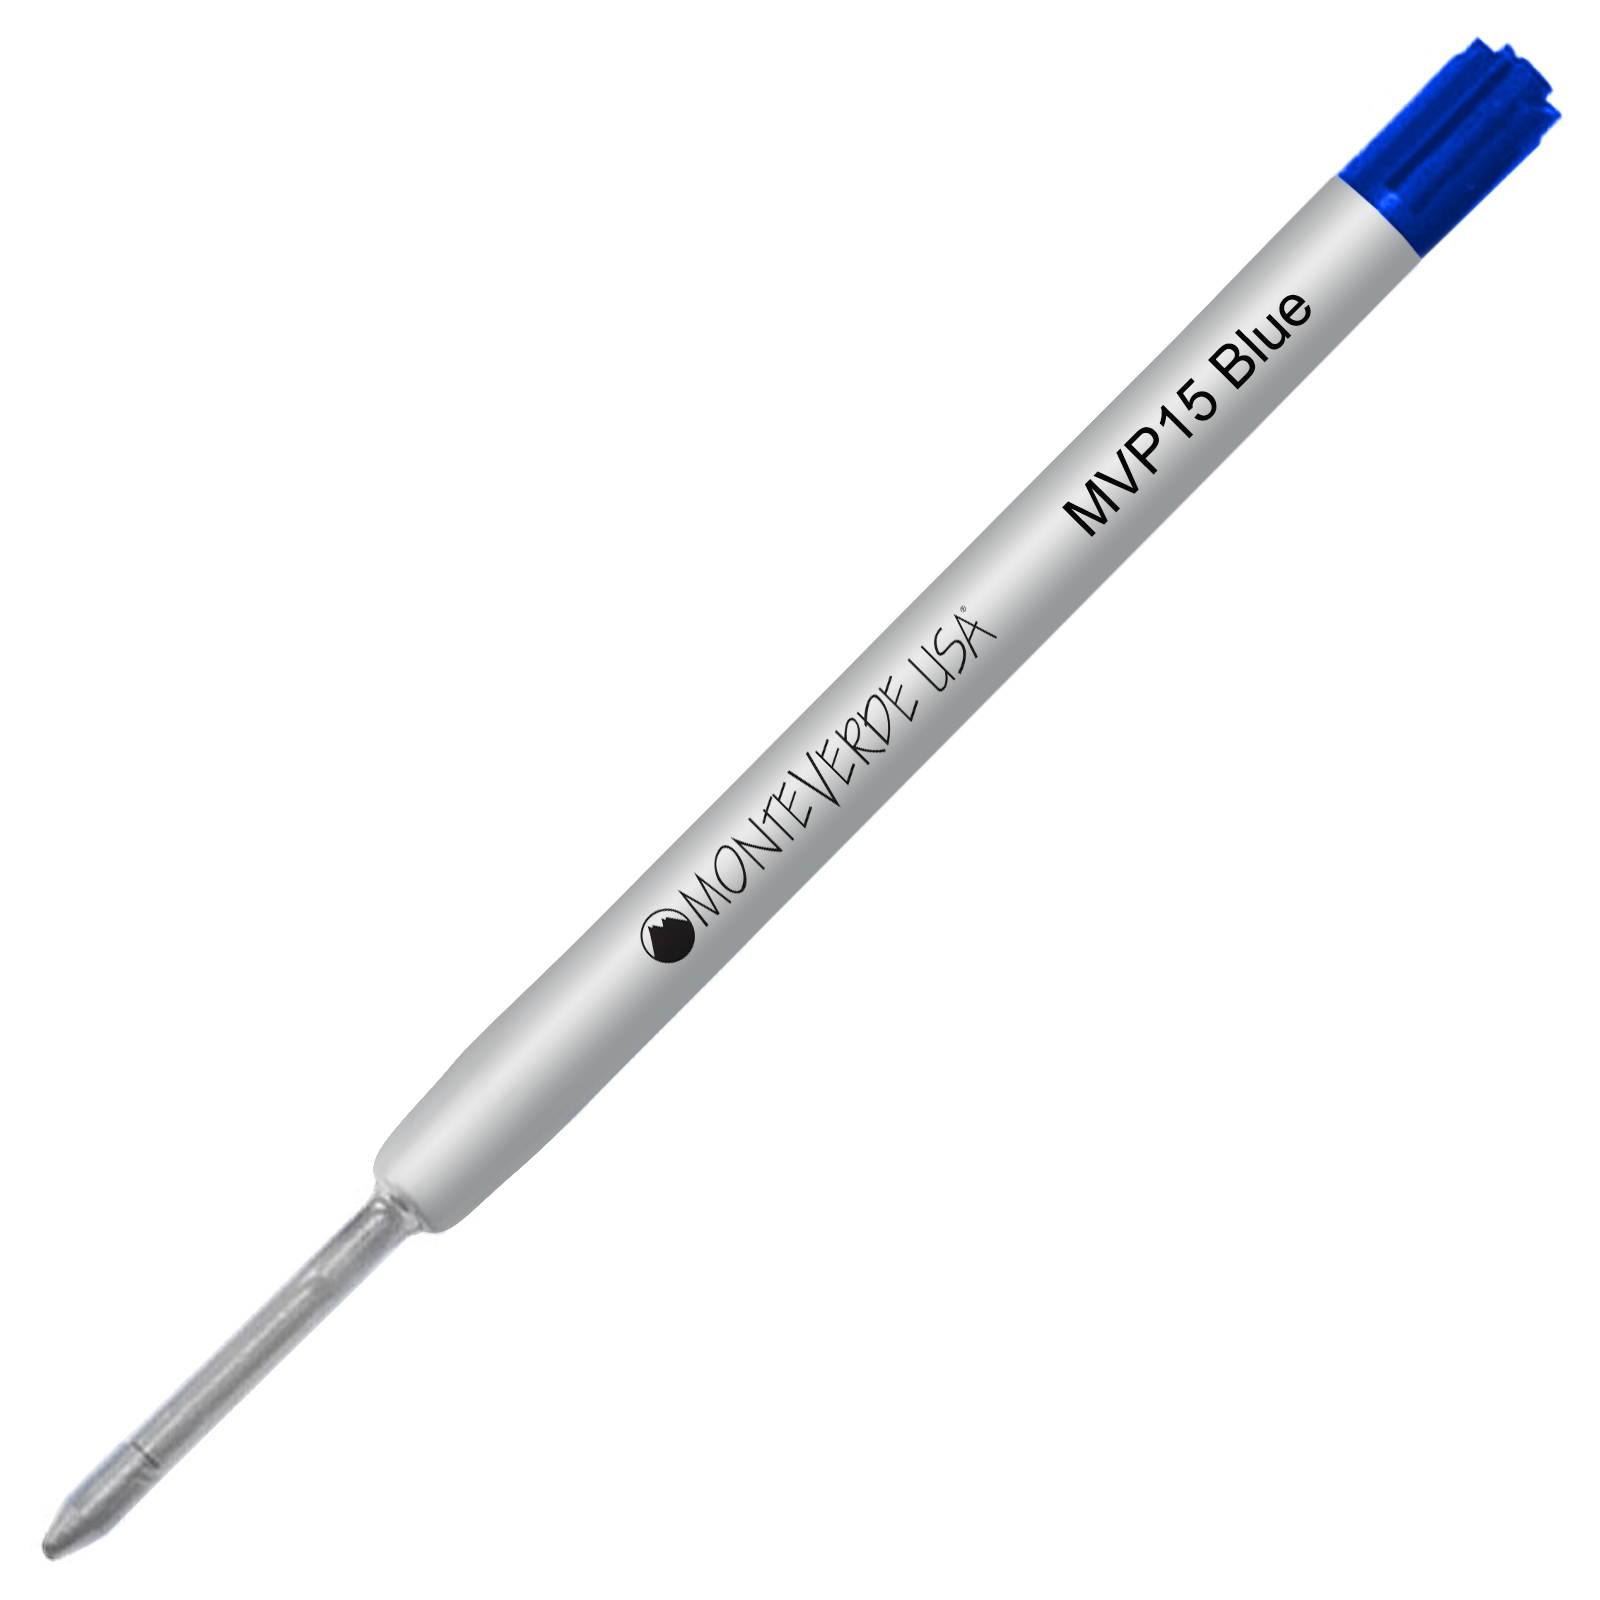 3 x Parker Compatible Rollerball Refill BLUE Pens Medium Rollerball Pen Refills 